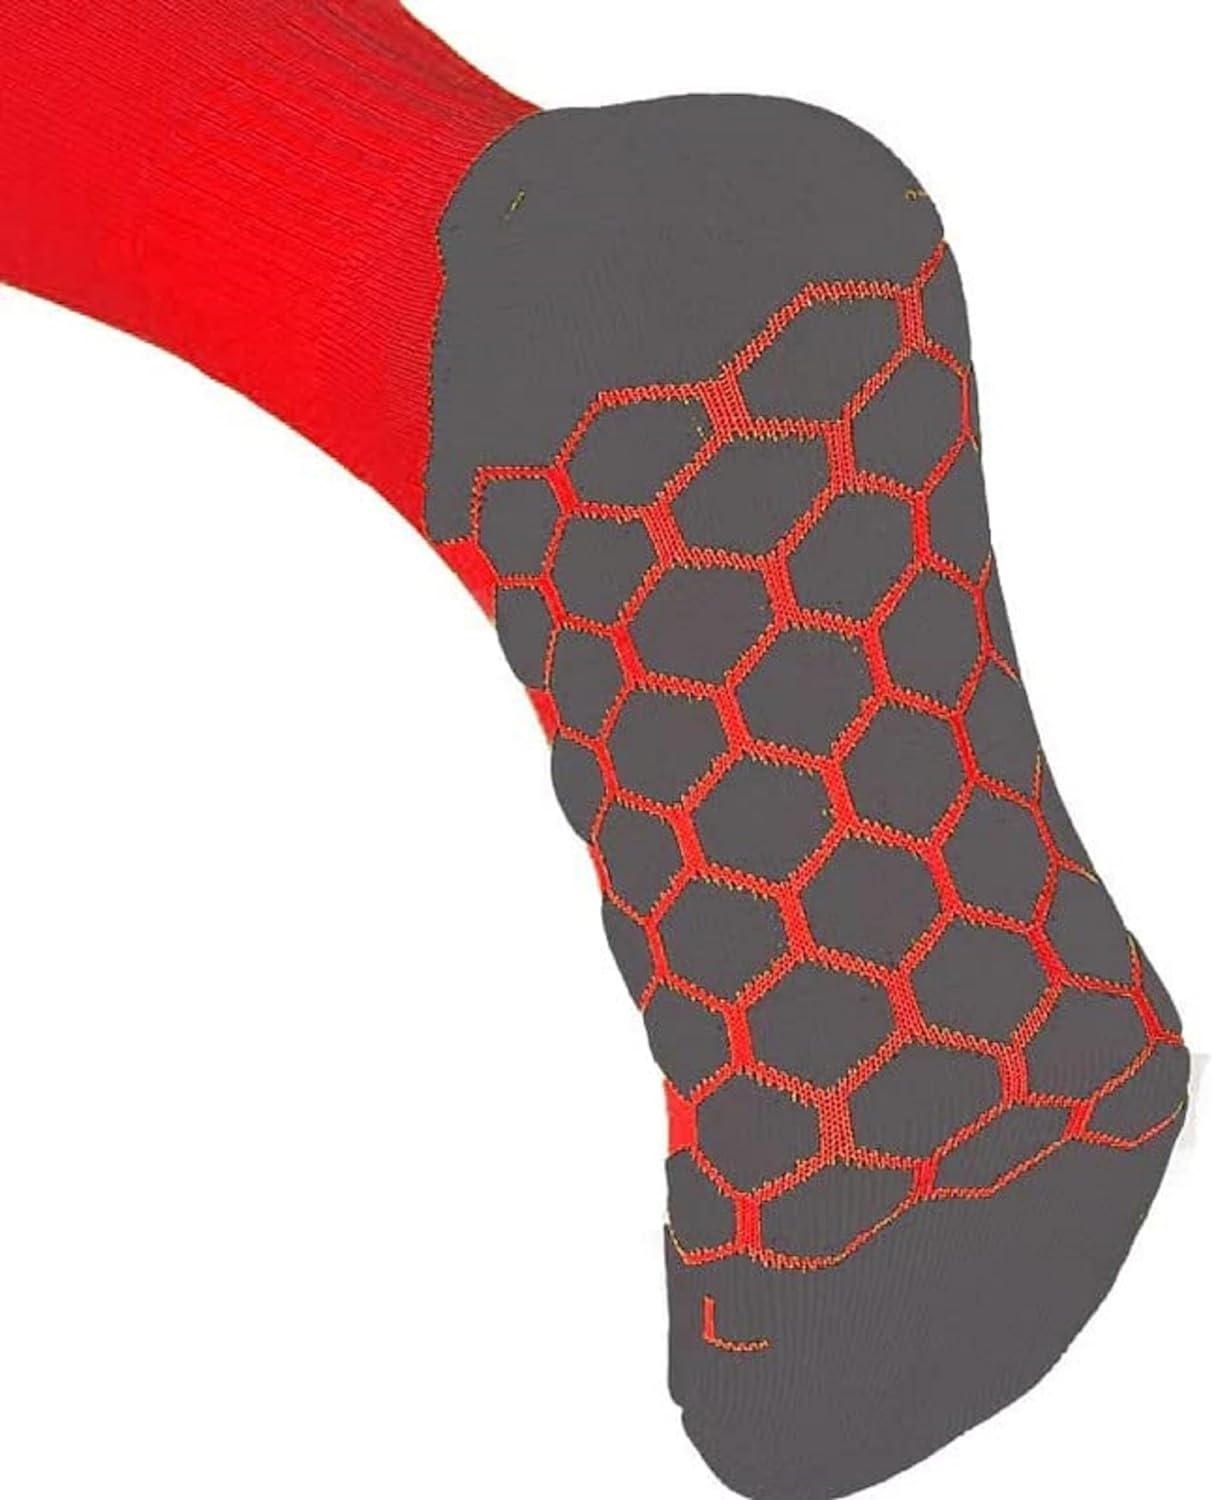 Red Classico Sock Durable Game Sports Socks - Optimum